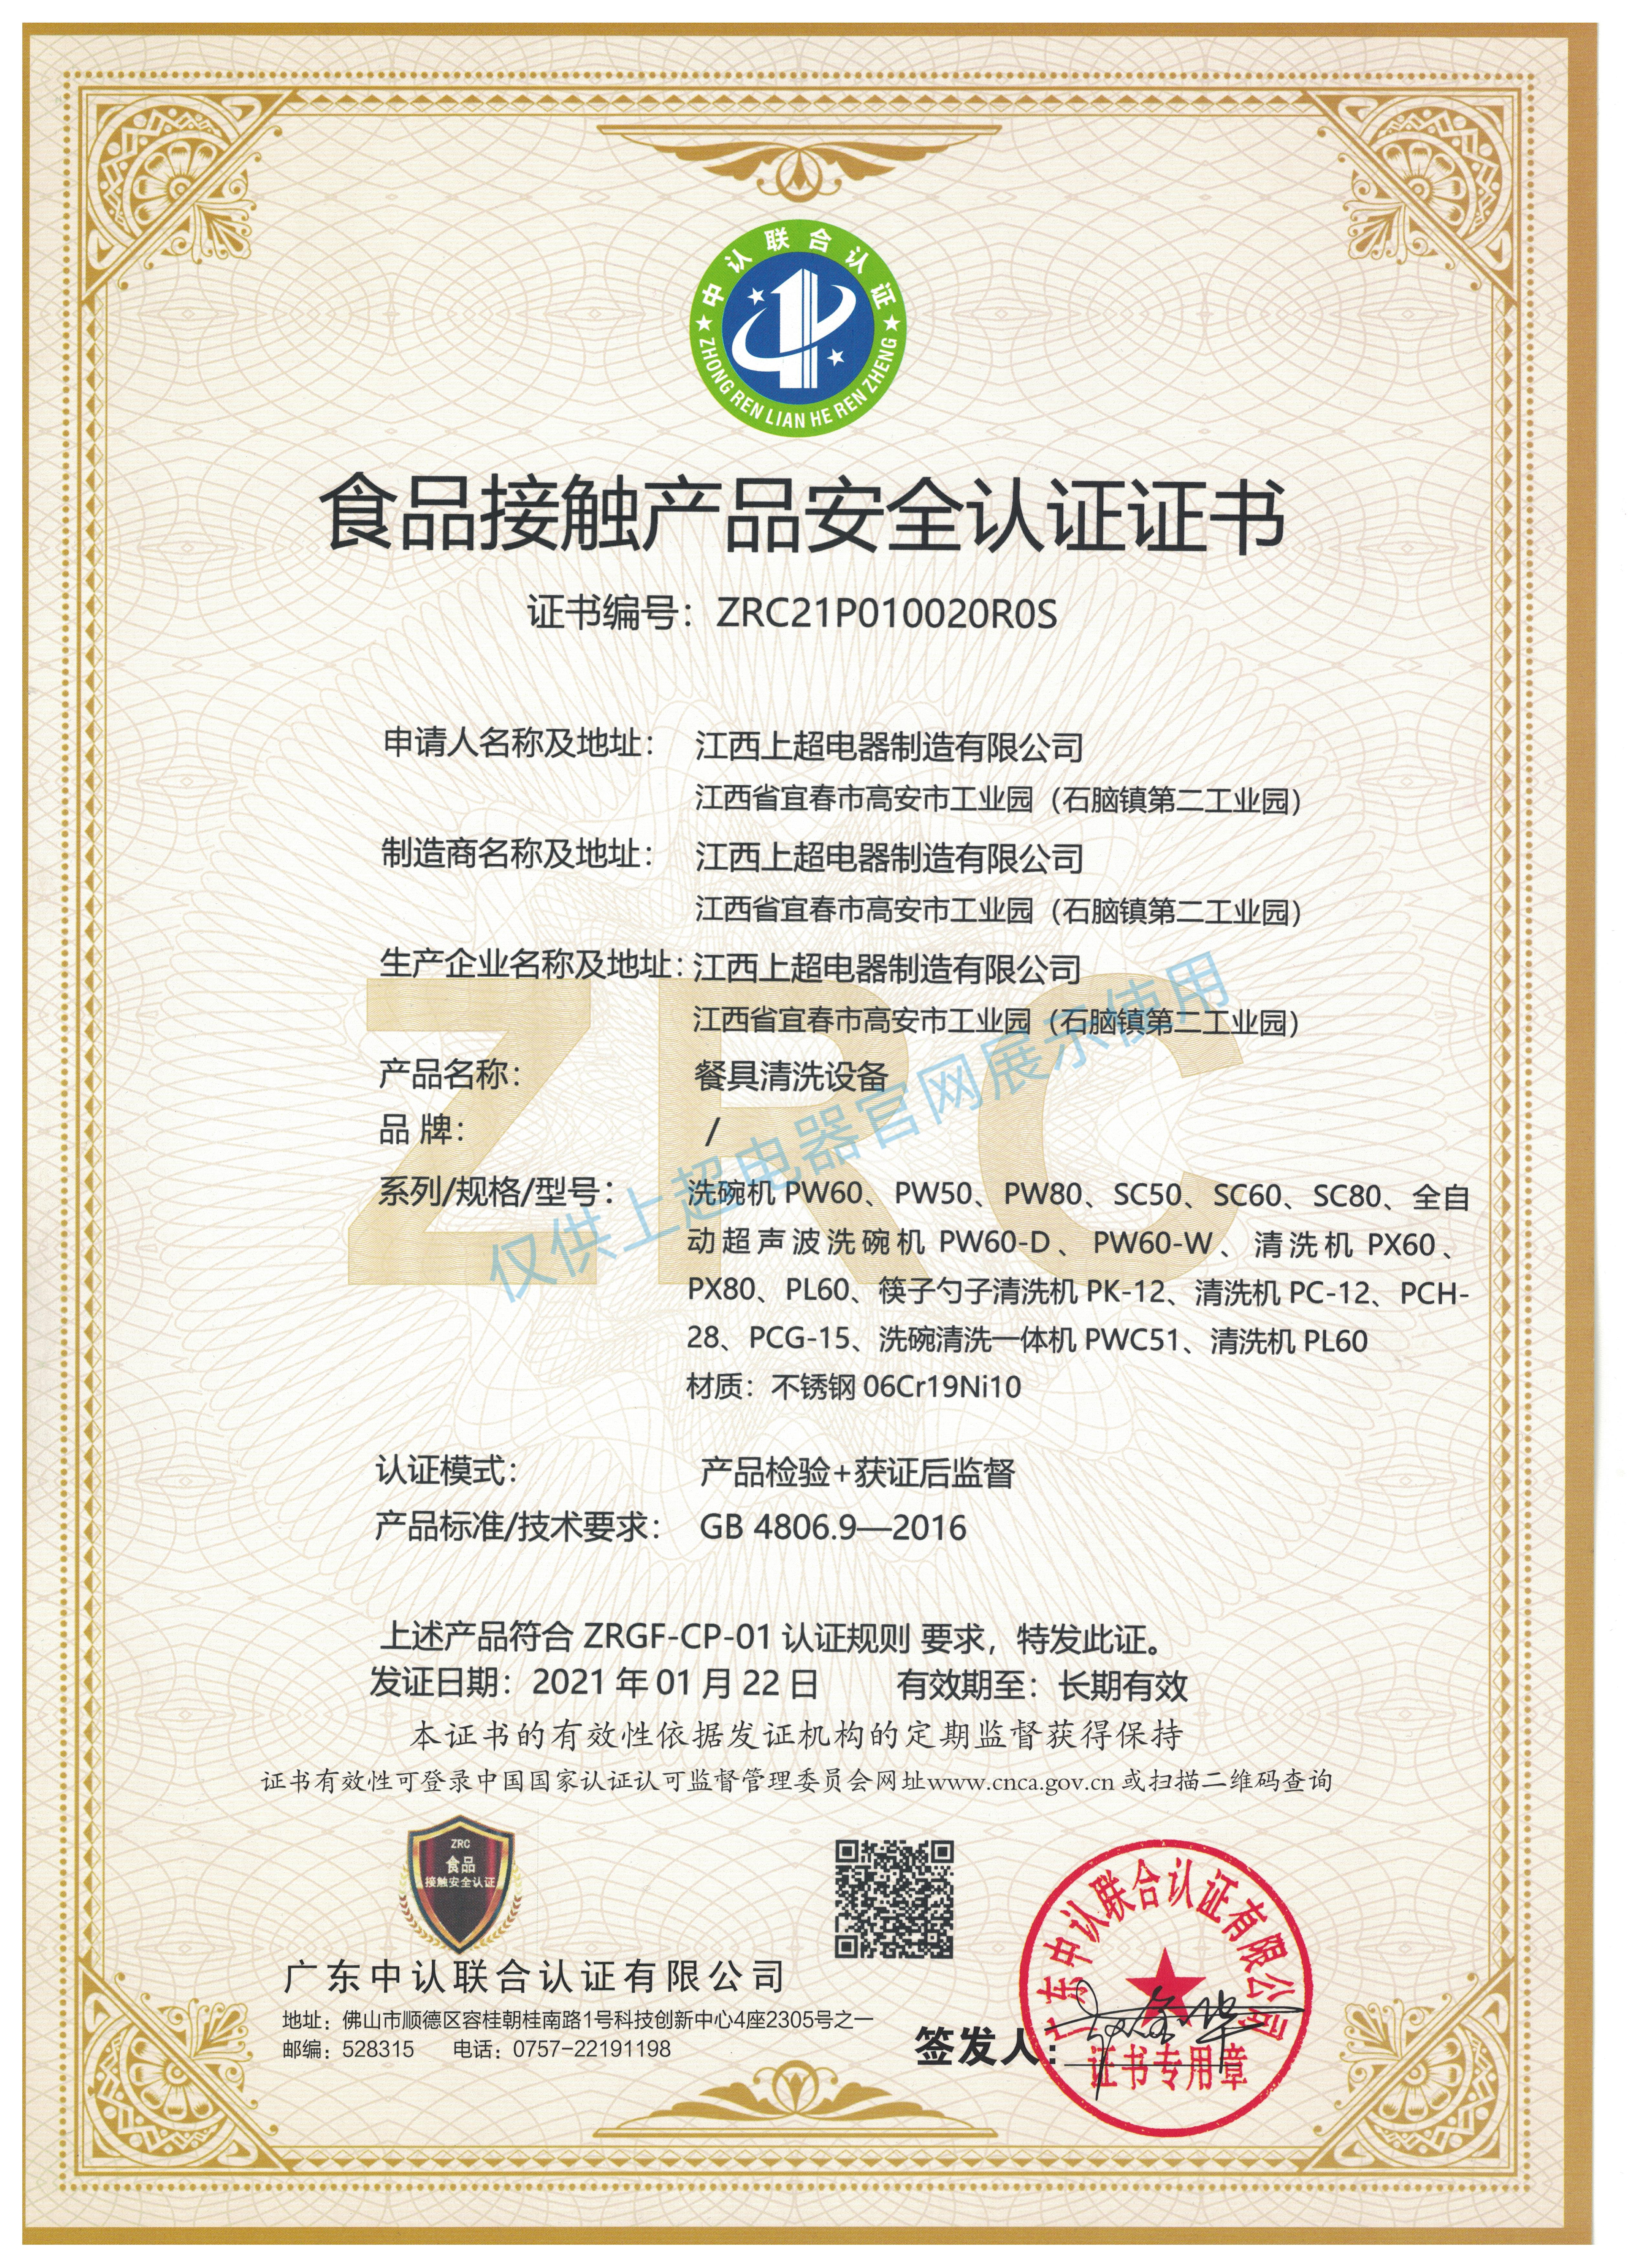 食品接触产品安全认证证书